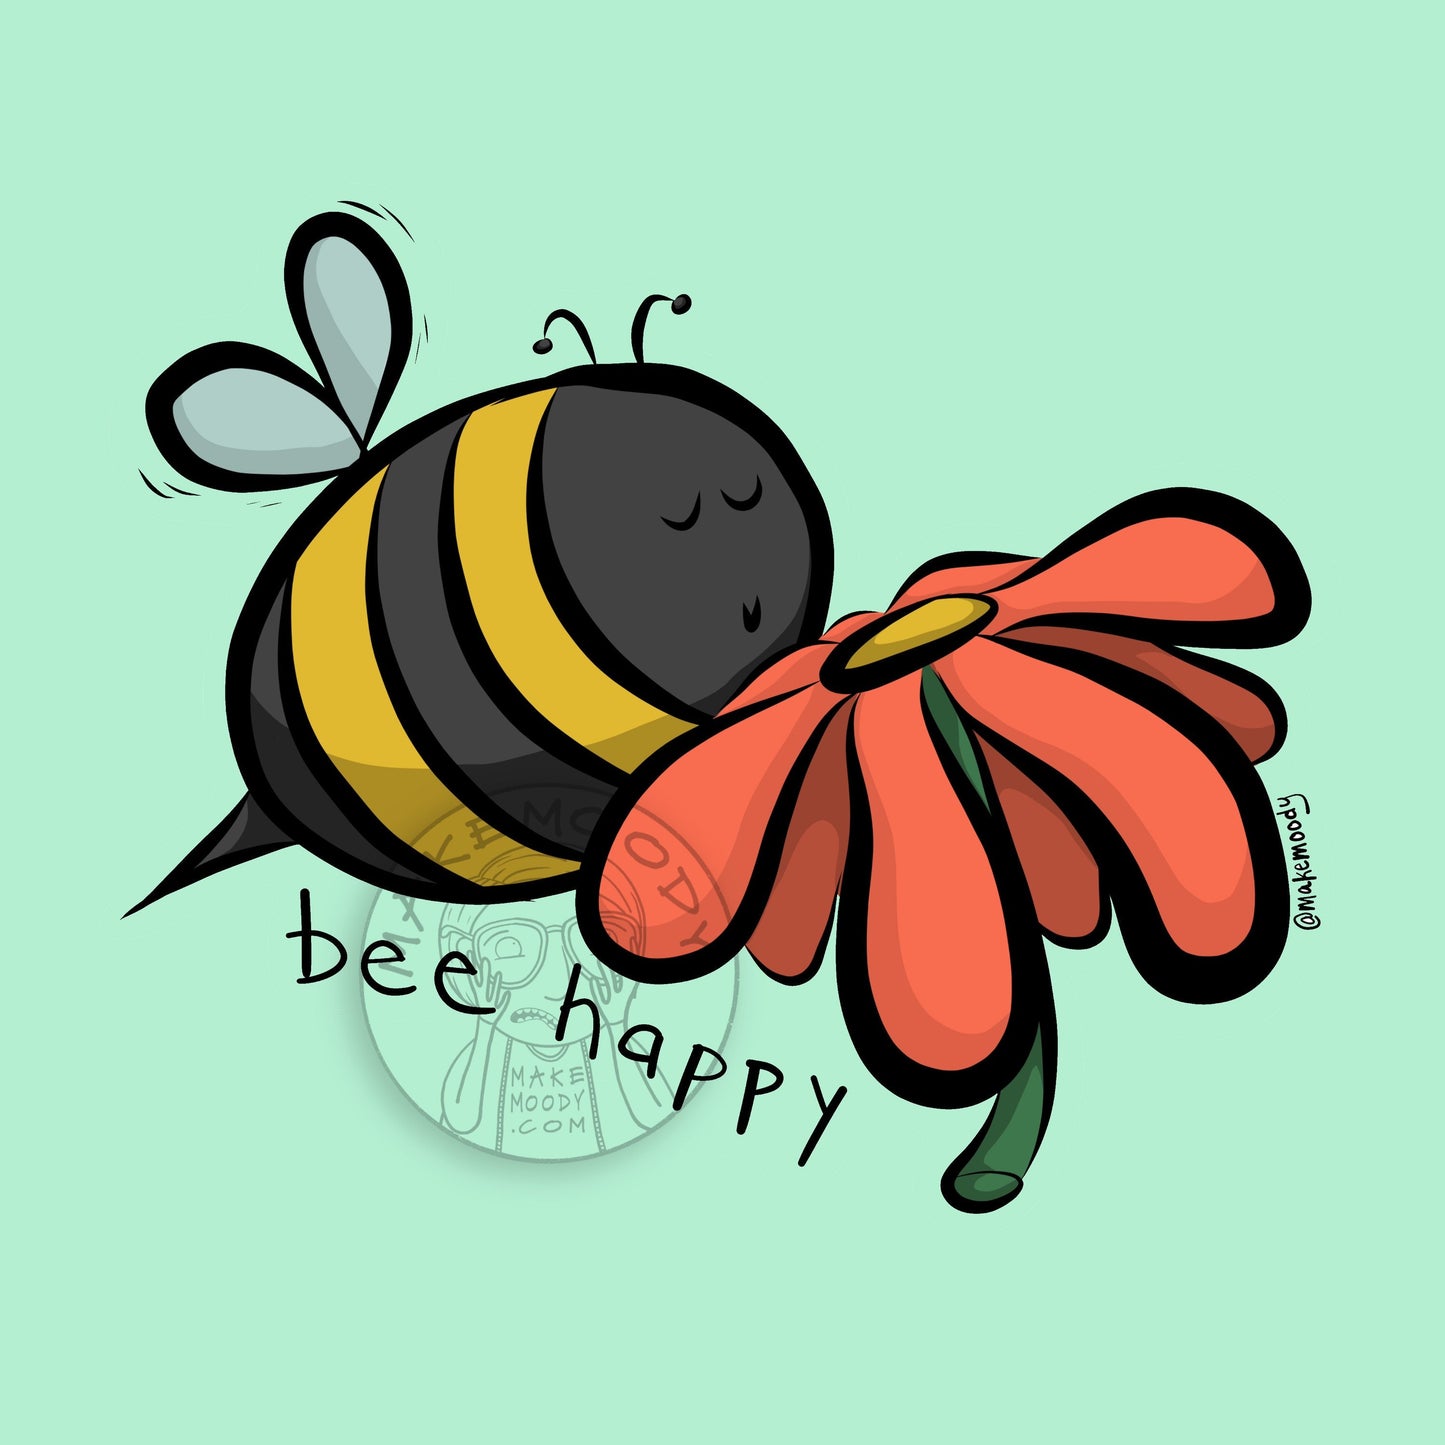 Bee Happy MUG - Coffee Mug - Be Happy Mug, Feel Good Mug, Happiness Mug, Positivity Mug, Save the Bees Mug